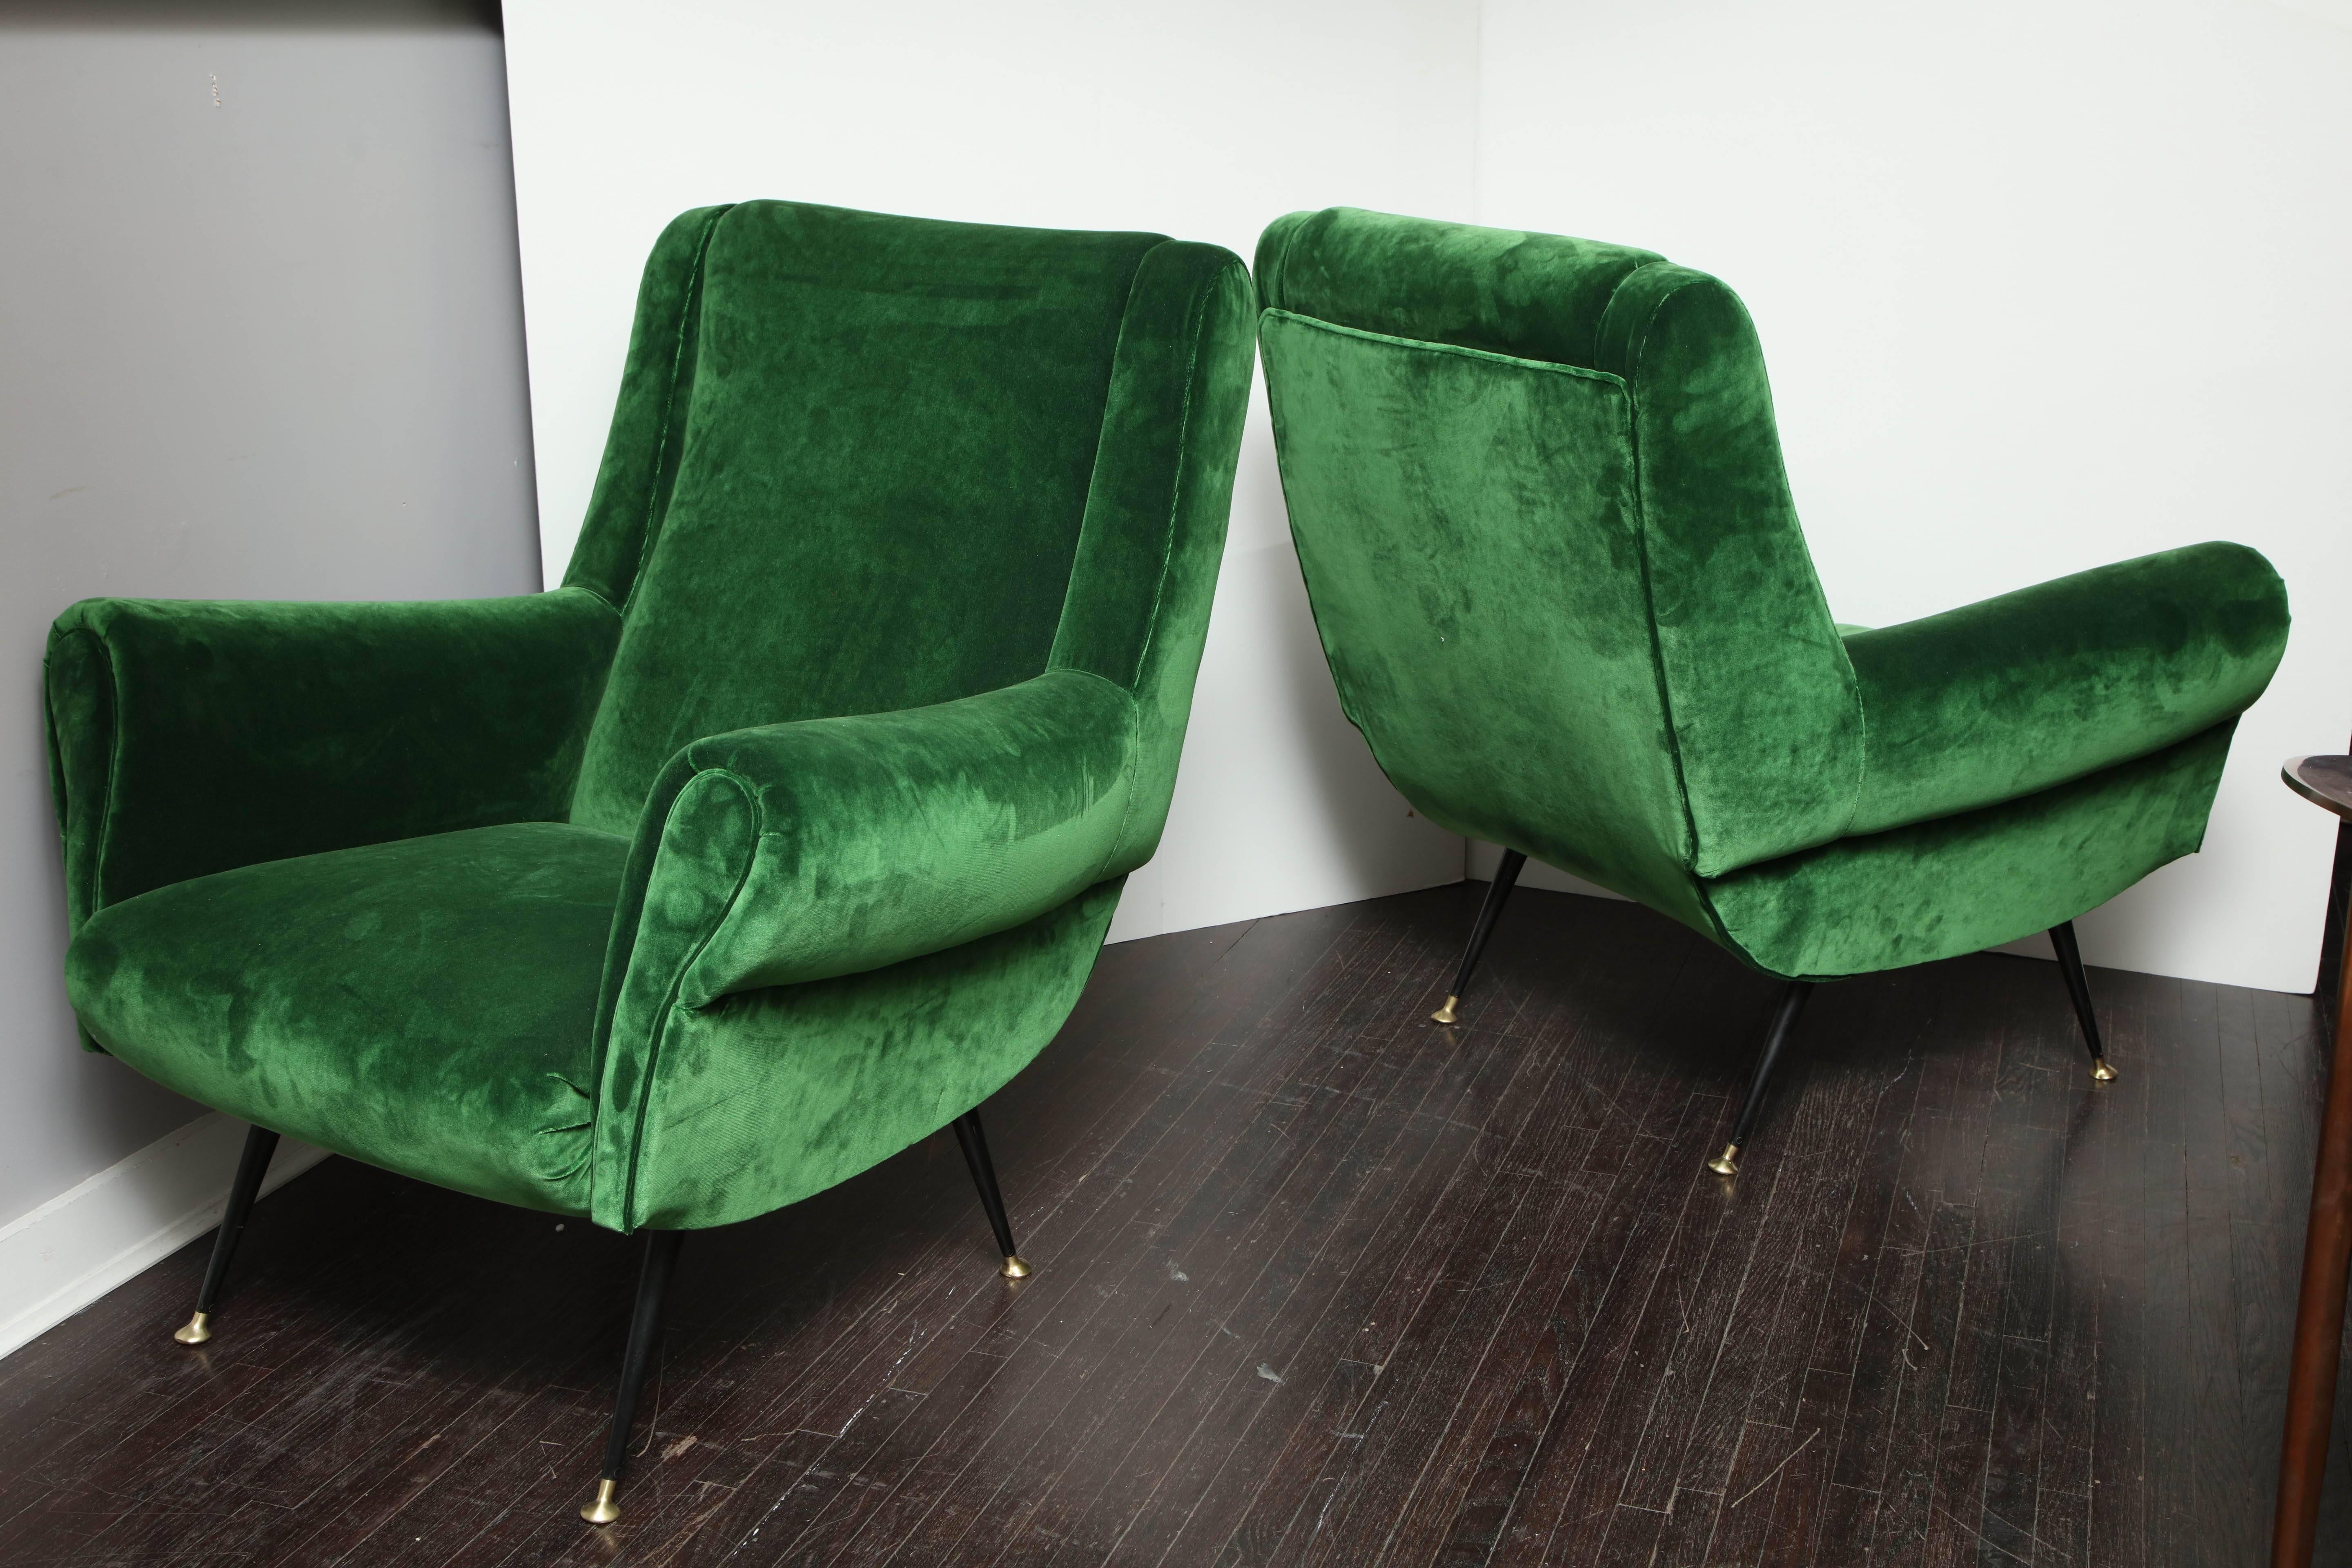 Pair of vintage Italian green velvet chairs.